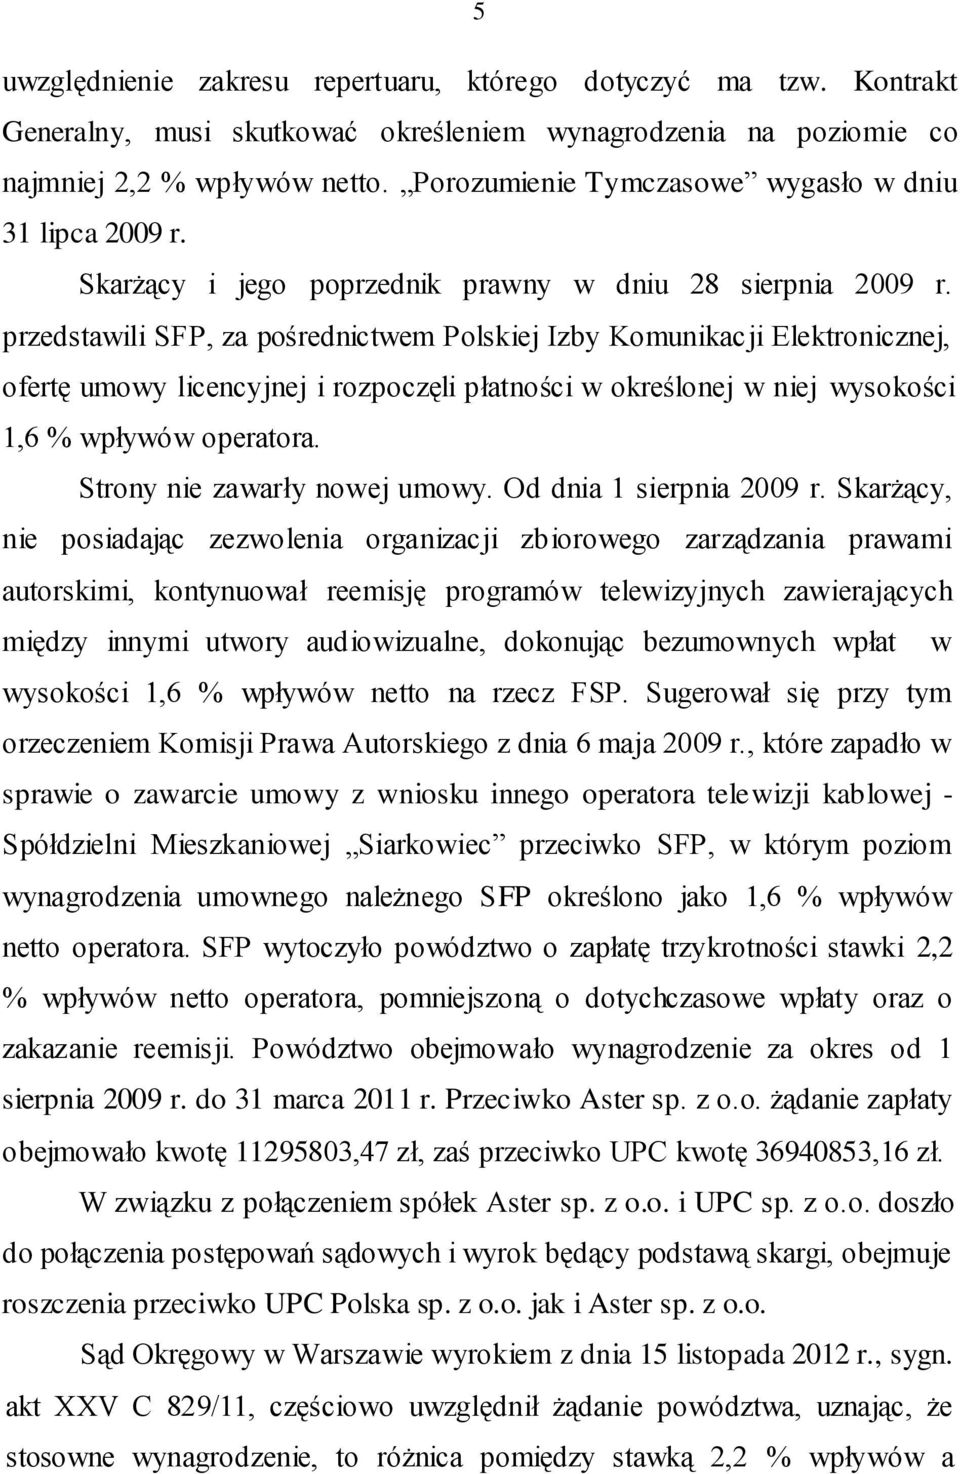 przedstawili SFP, za pośrednictwem Polskiej Izby Komunikacji Elektronicznej, ofertę umowy licencyjnej i rozpoczęli płatności w określonej w niej wysokości 1,6 % wpływów operatora.